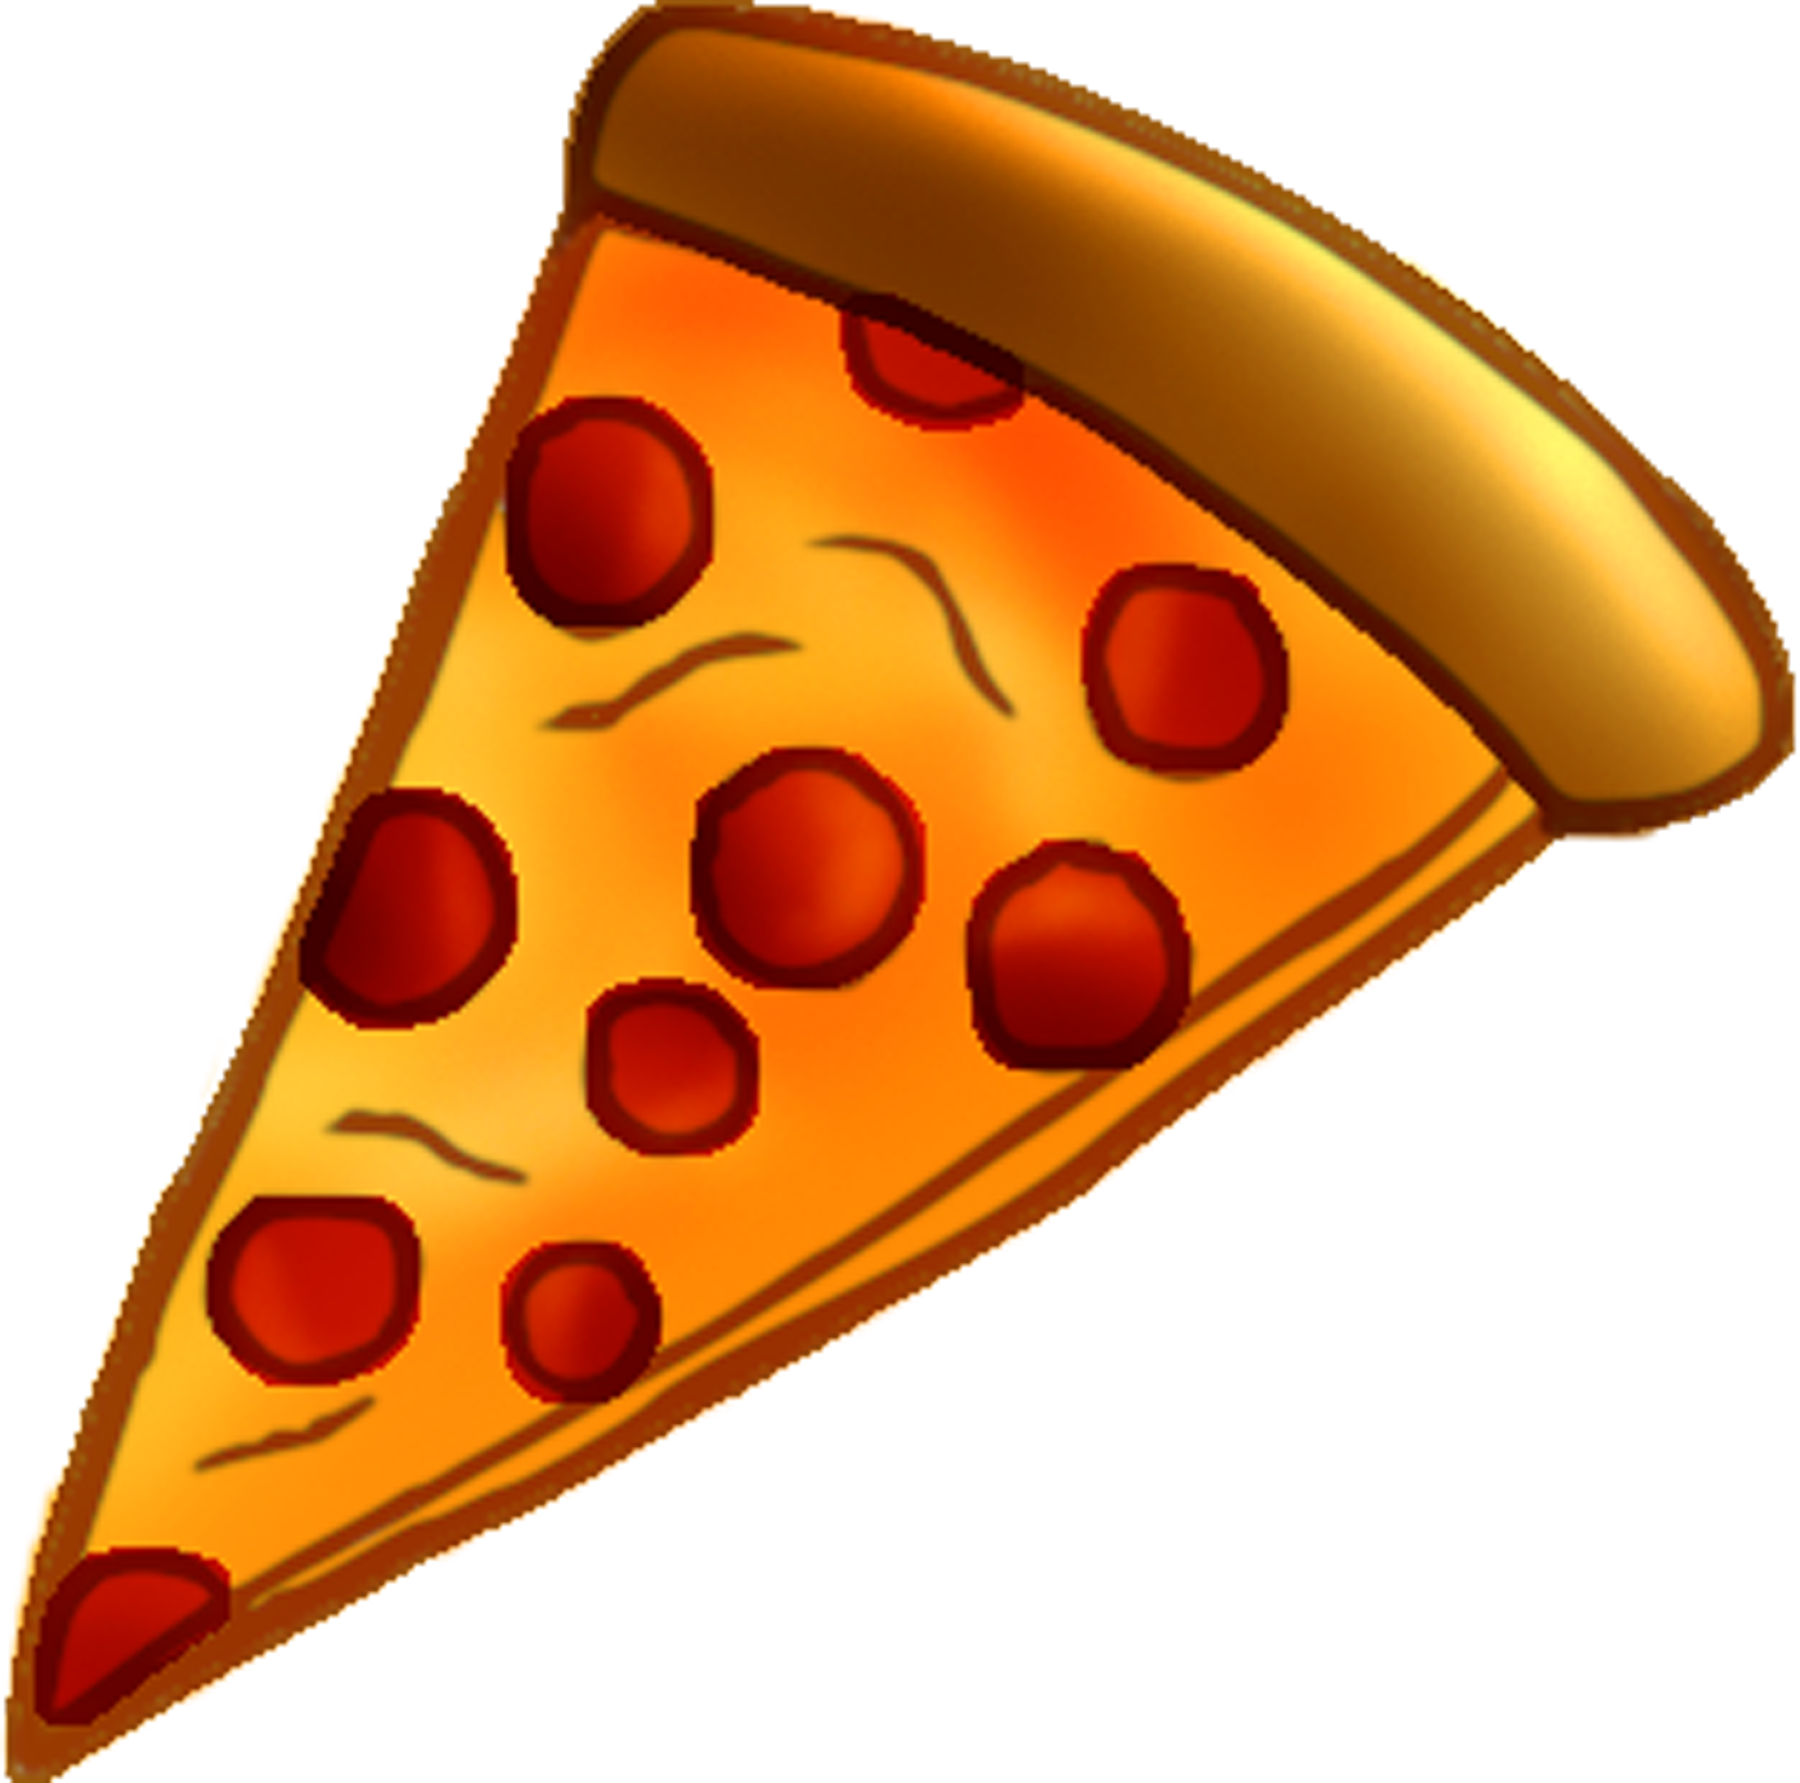 Pizza slice clipart no background - ClipartFox